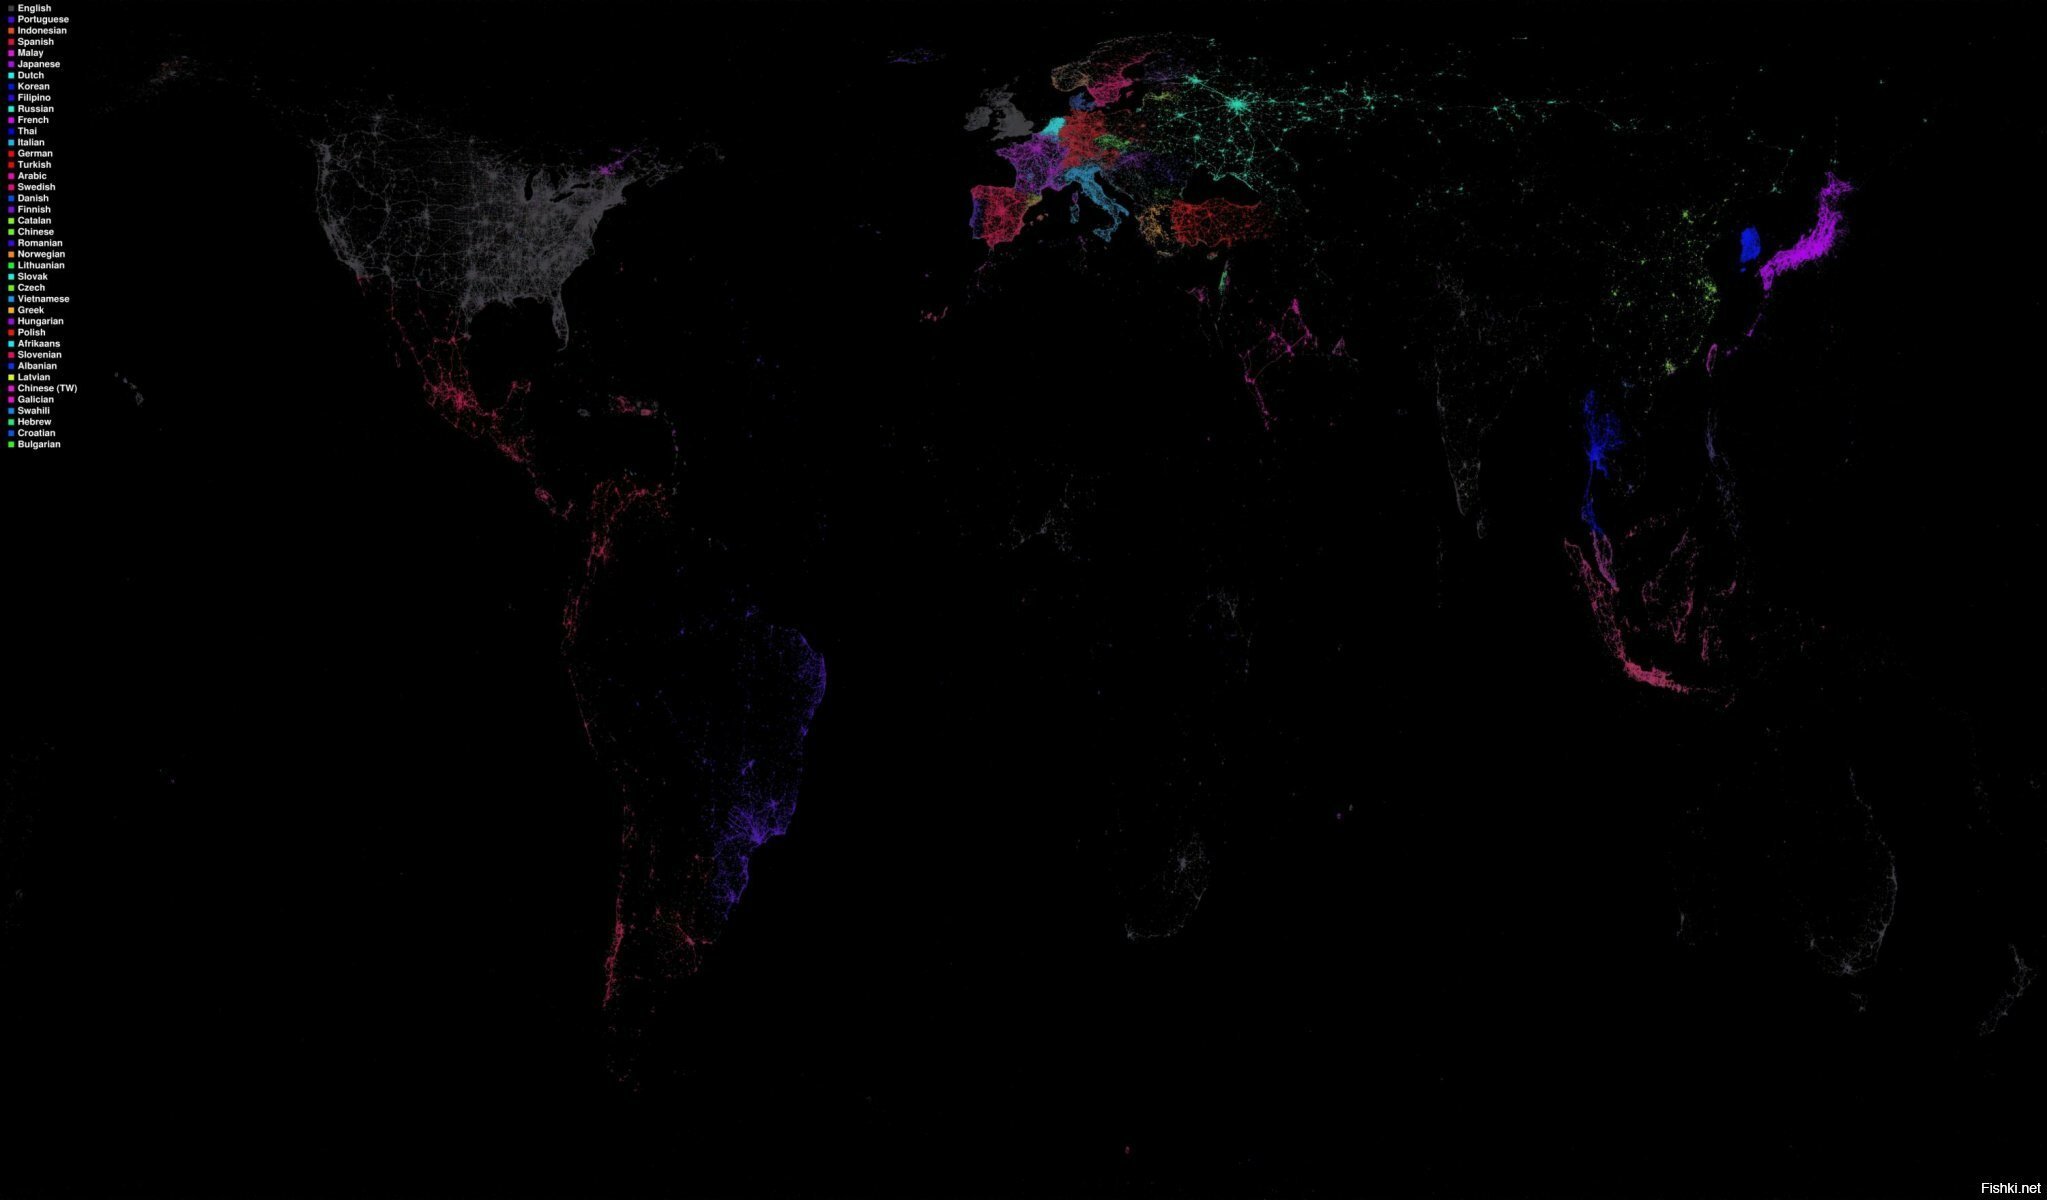 Детальная карта Мира, отображаемая сообщениями в Твиттер (Twitter), каждый цв...